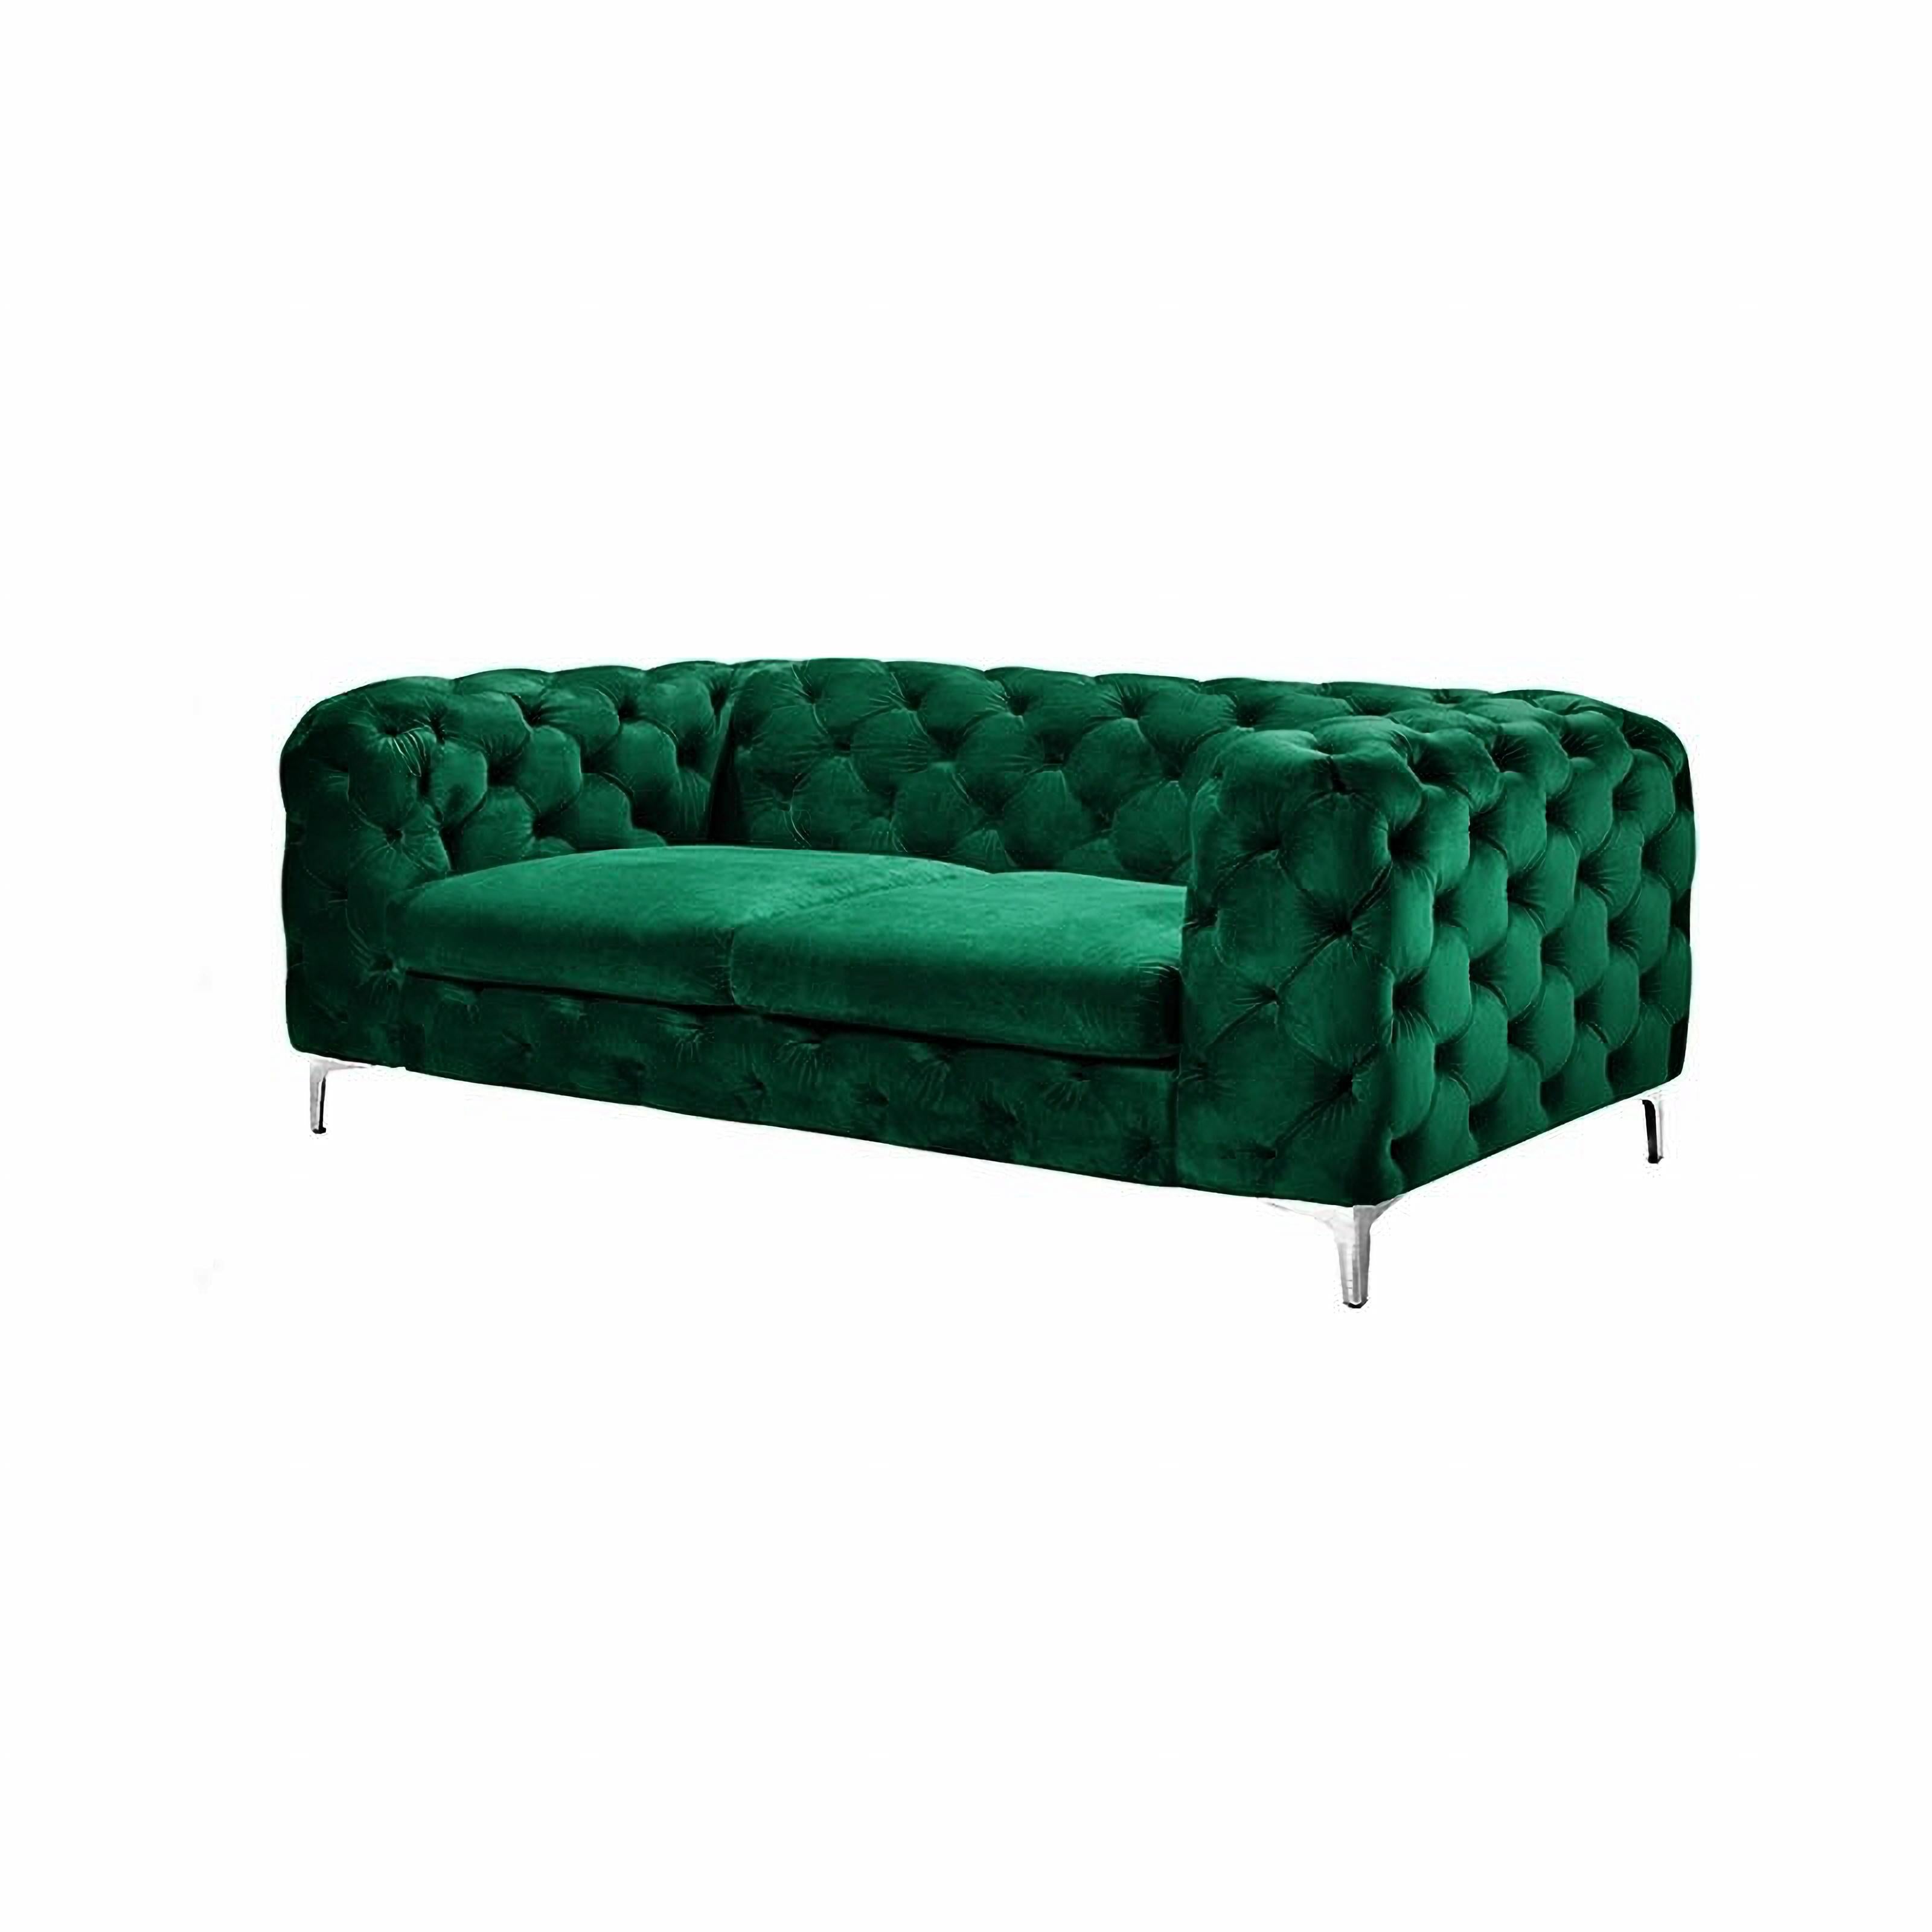 2 seater green sofa